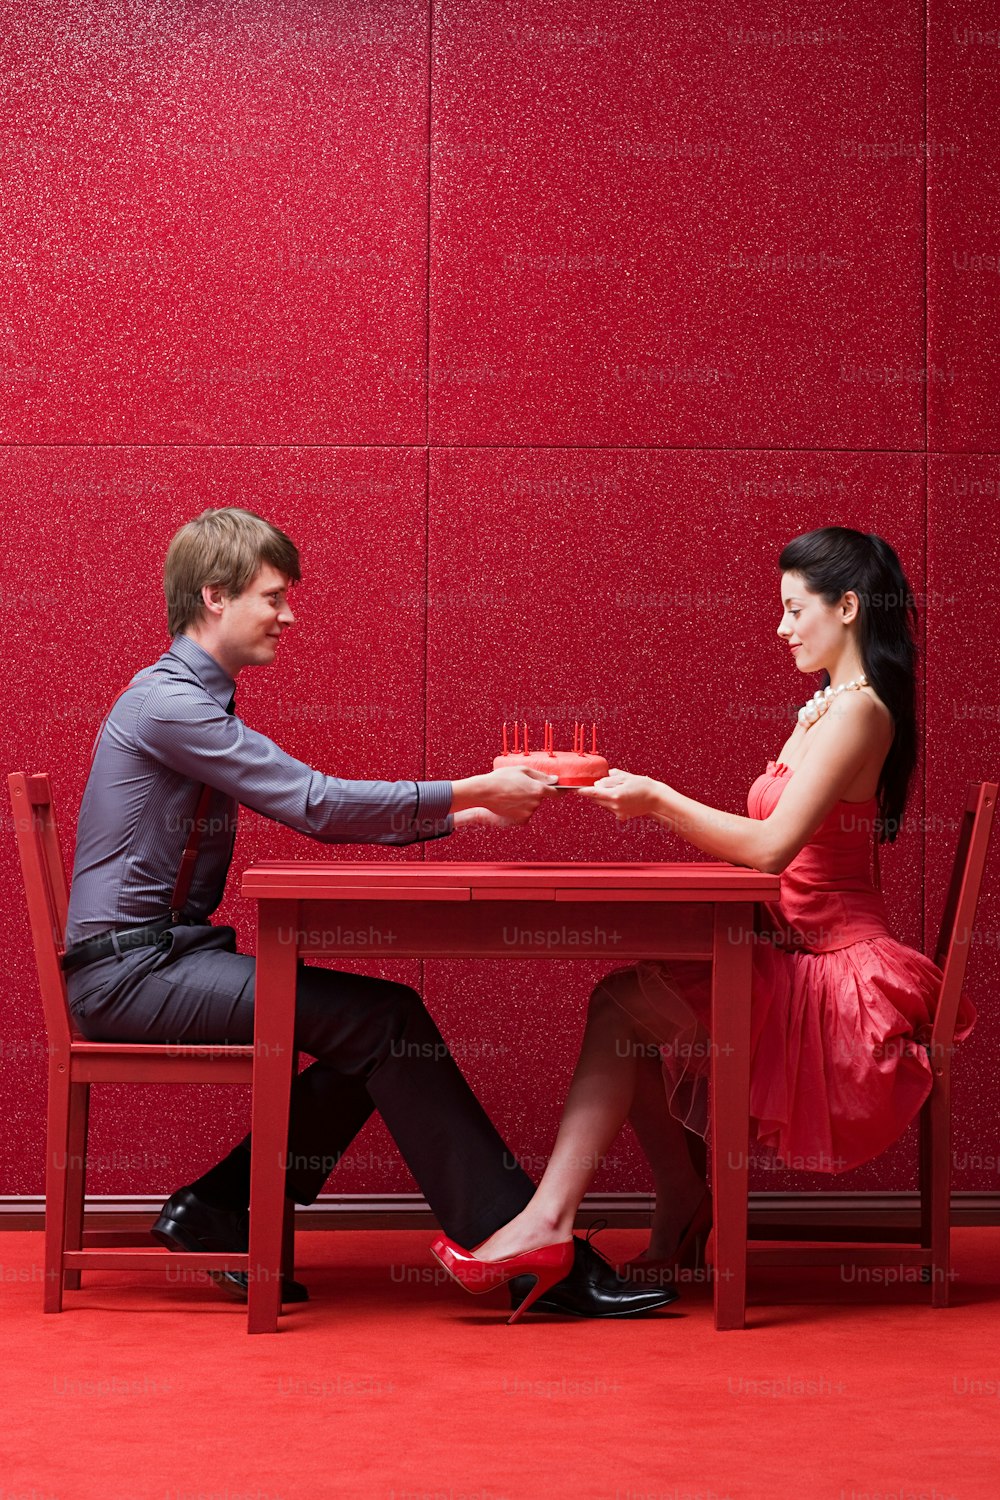 한 남자와 한 여자가 식탁에 앉아 있다